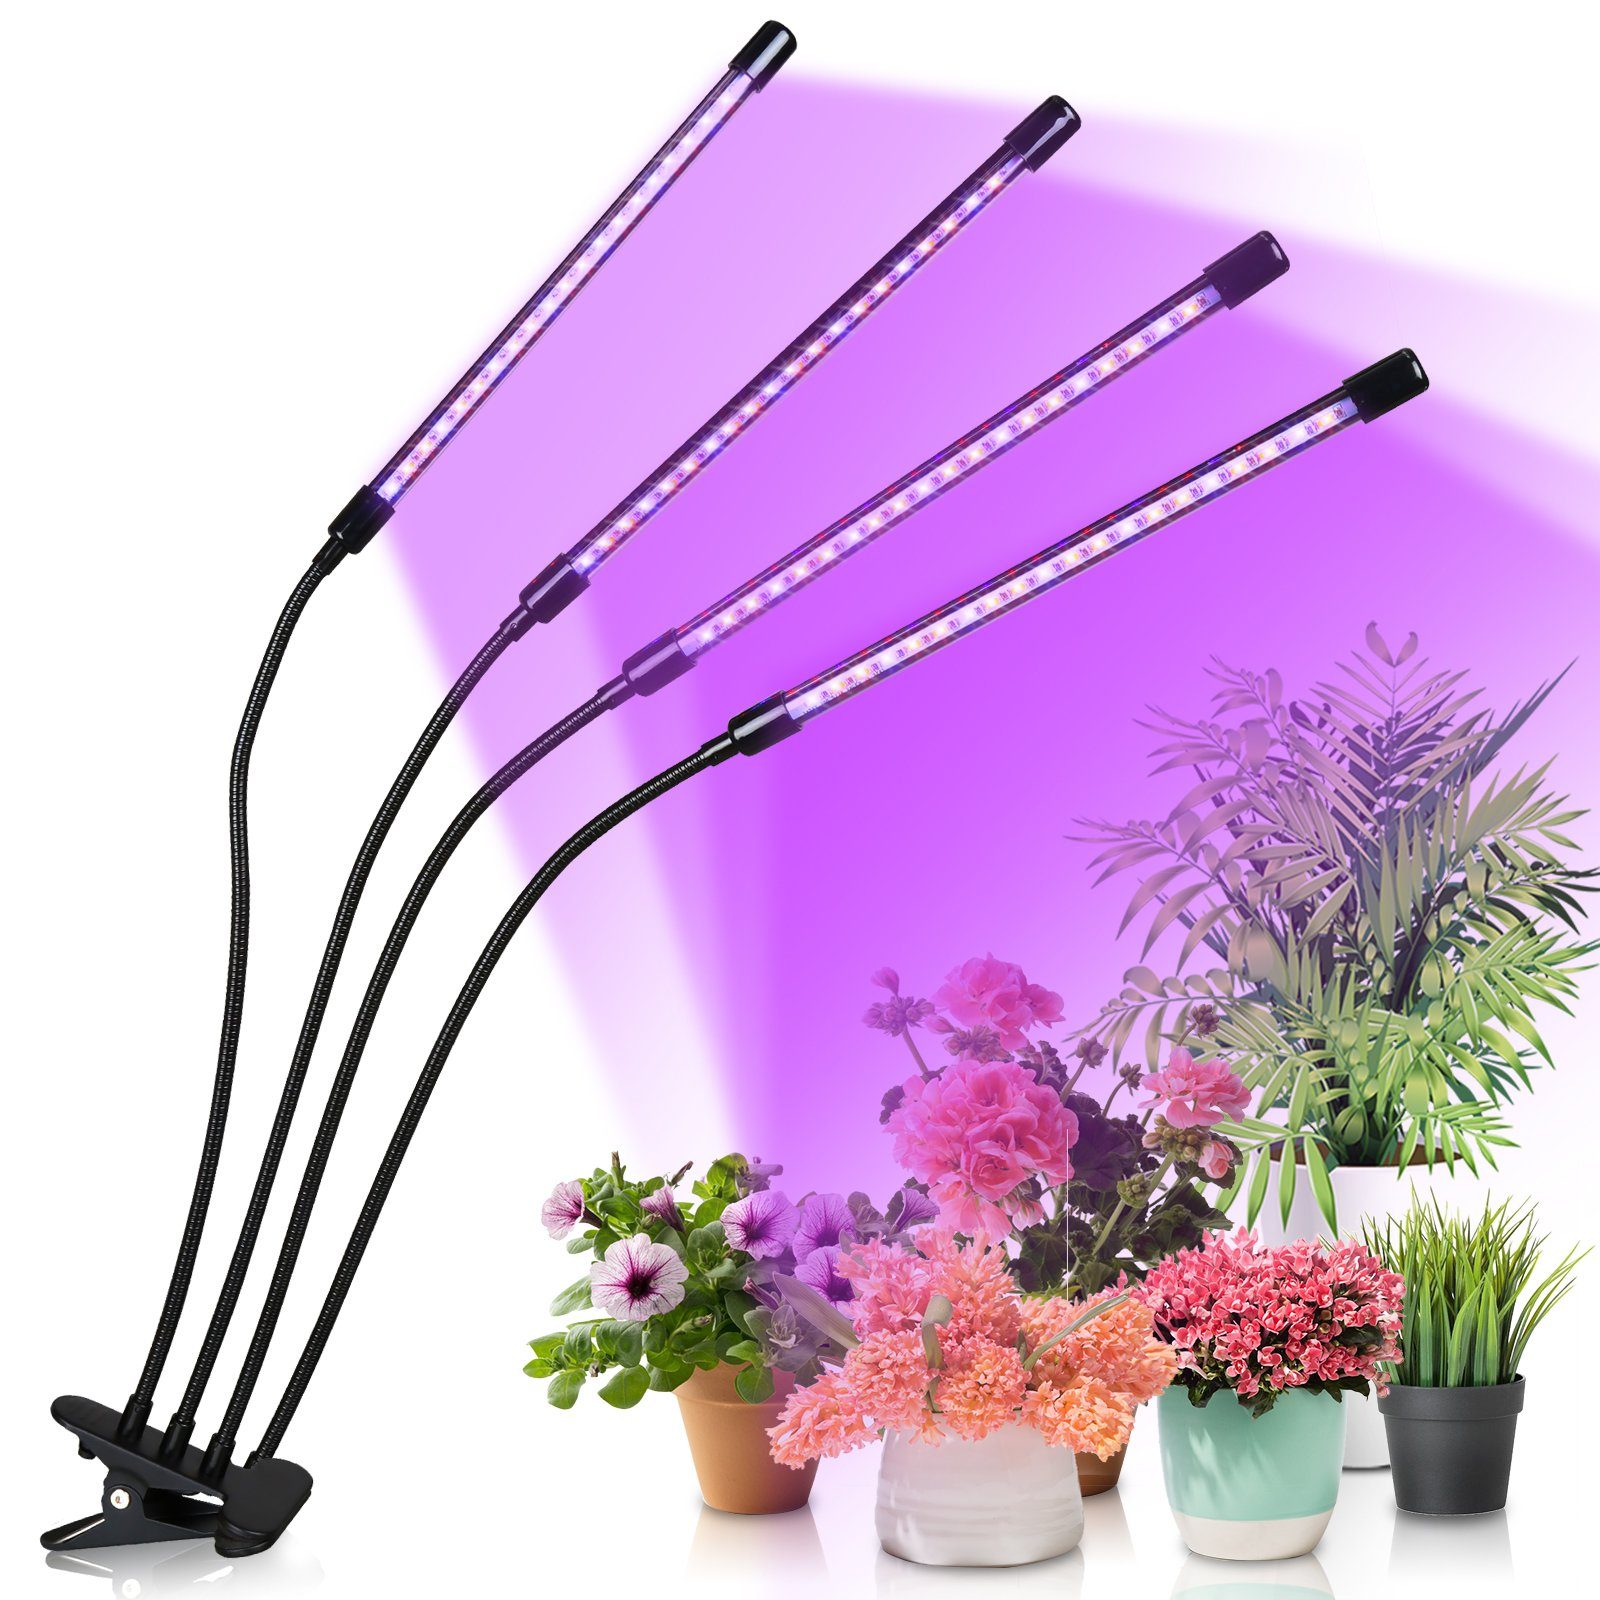 Lospitch Pflanzenlampe LED Pflanzenlicht 80 LEDs 4 Köpfe Grow Lampe Pflanzenleuchte, Wachstumslampe Pflanzen 10 Dimmstufen LED Zimmerpflanzen Vollspektrum